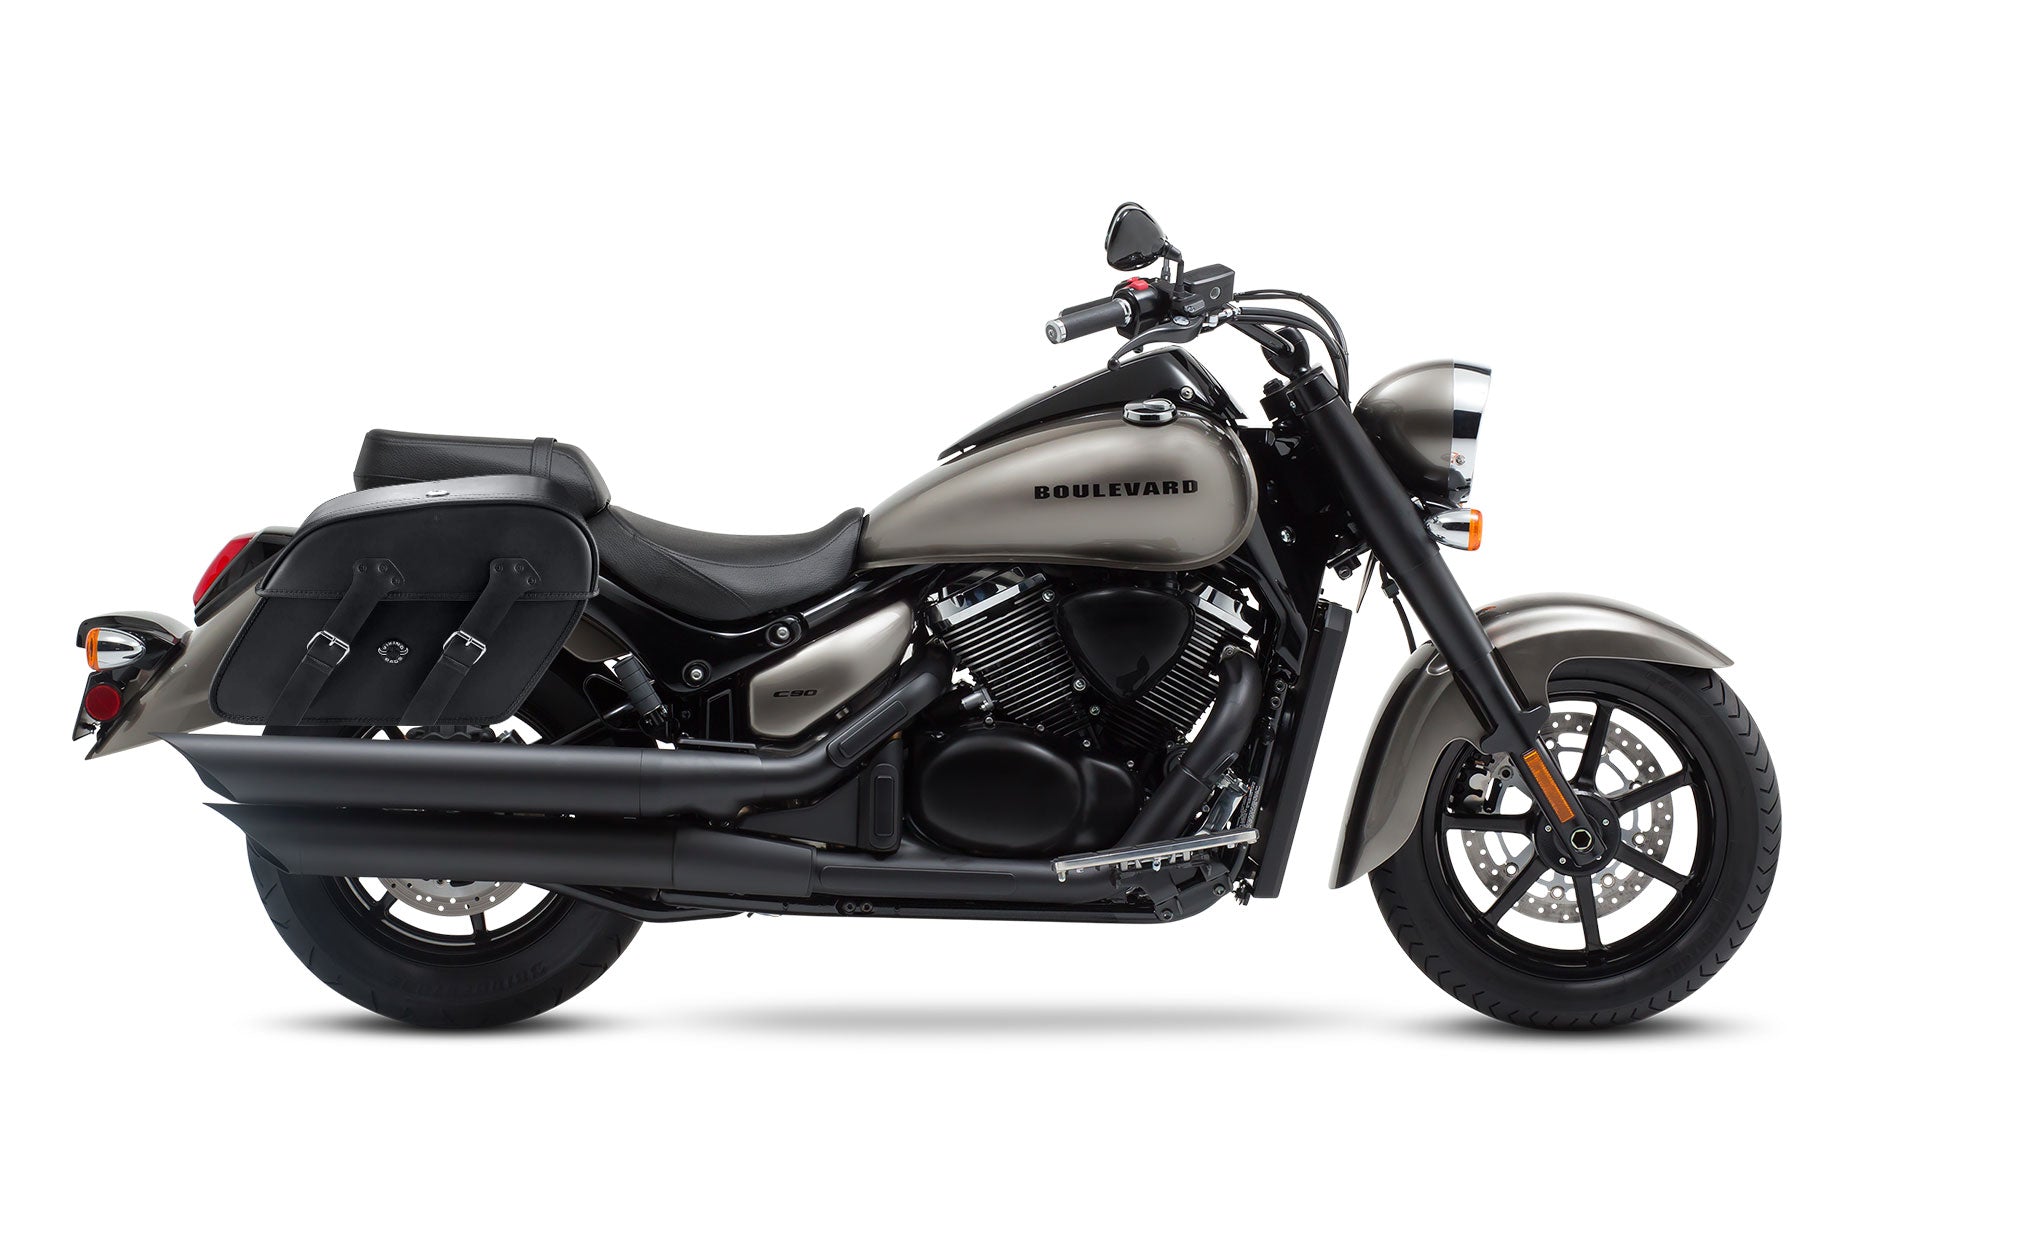 Viking Raven Extra Large Suzuki Boulevard C90 Vl1500 Leather Motorcycle Saddlebags on Bike Photo @expand